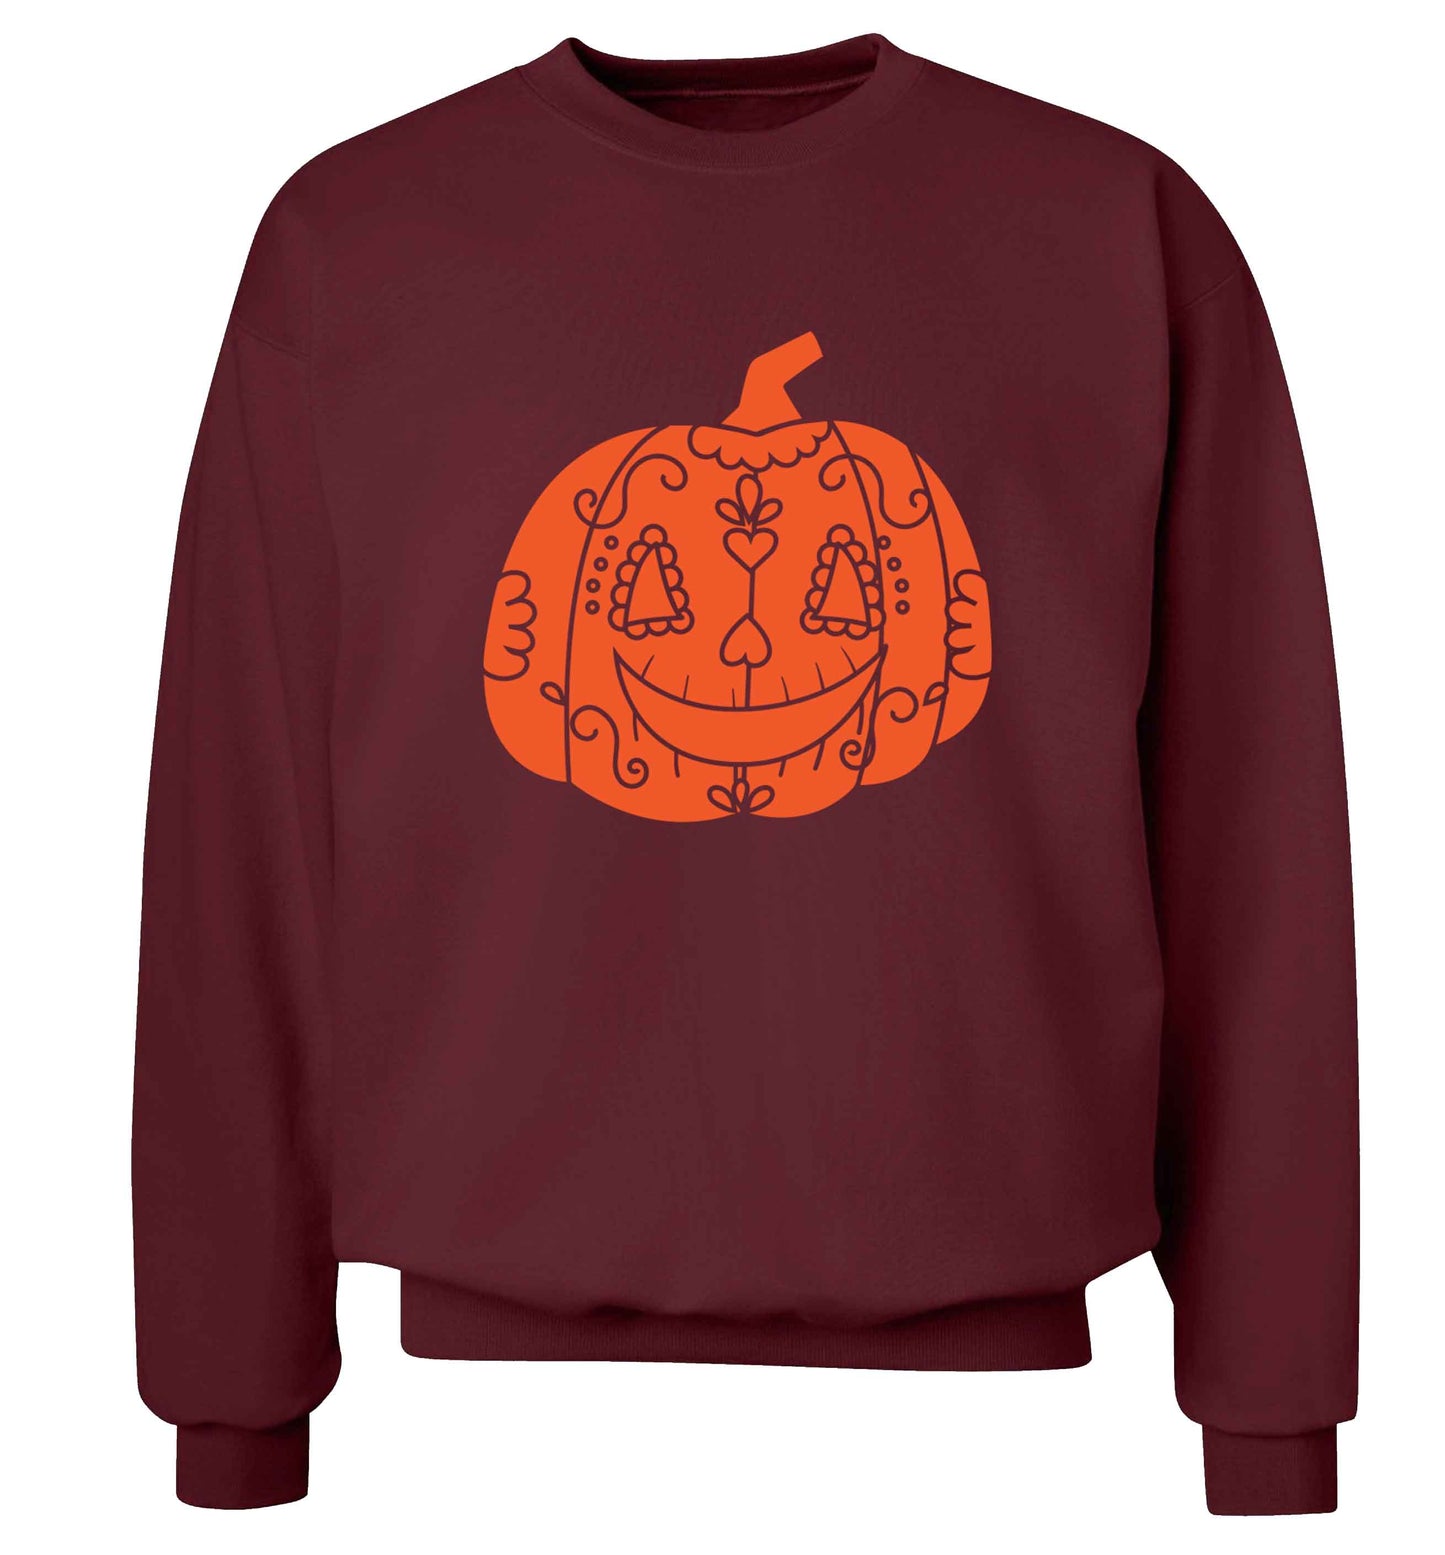 Pumpkin sugar skull adult's unisex maroon sweater 2XL